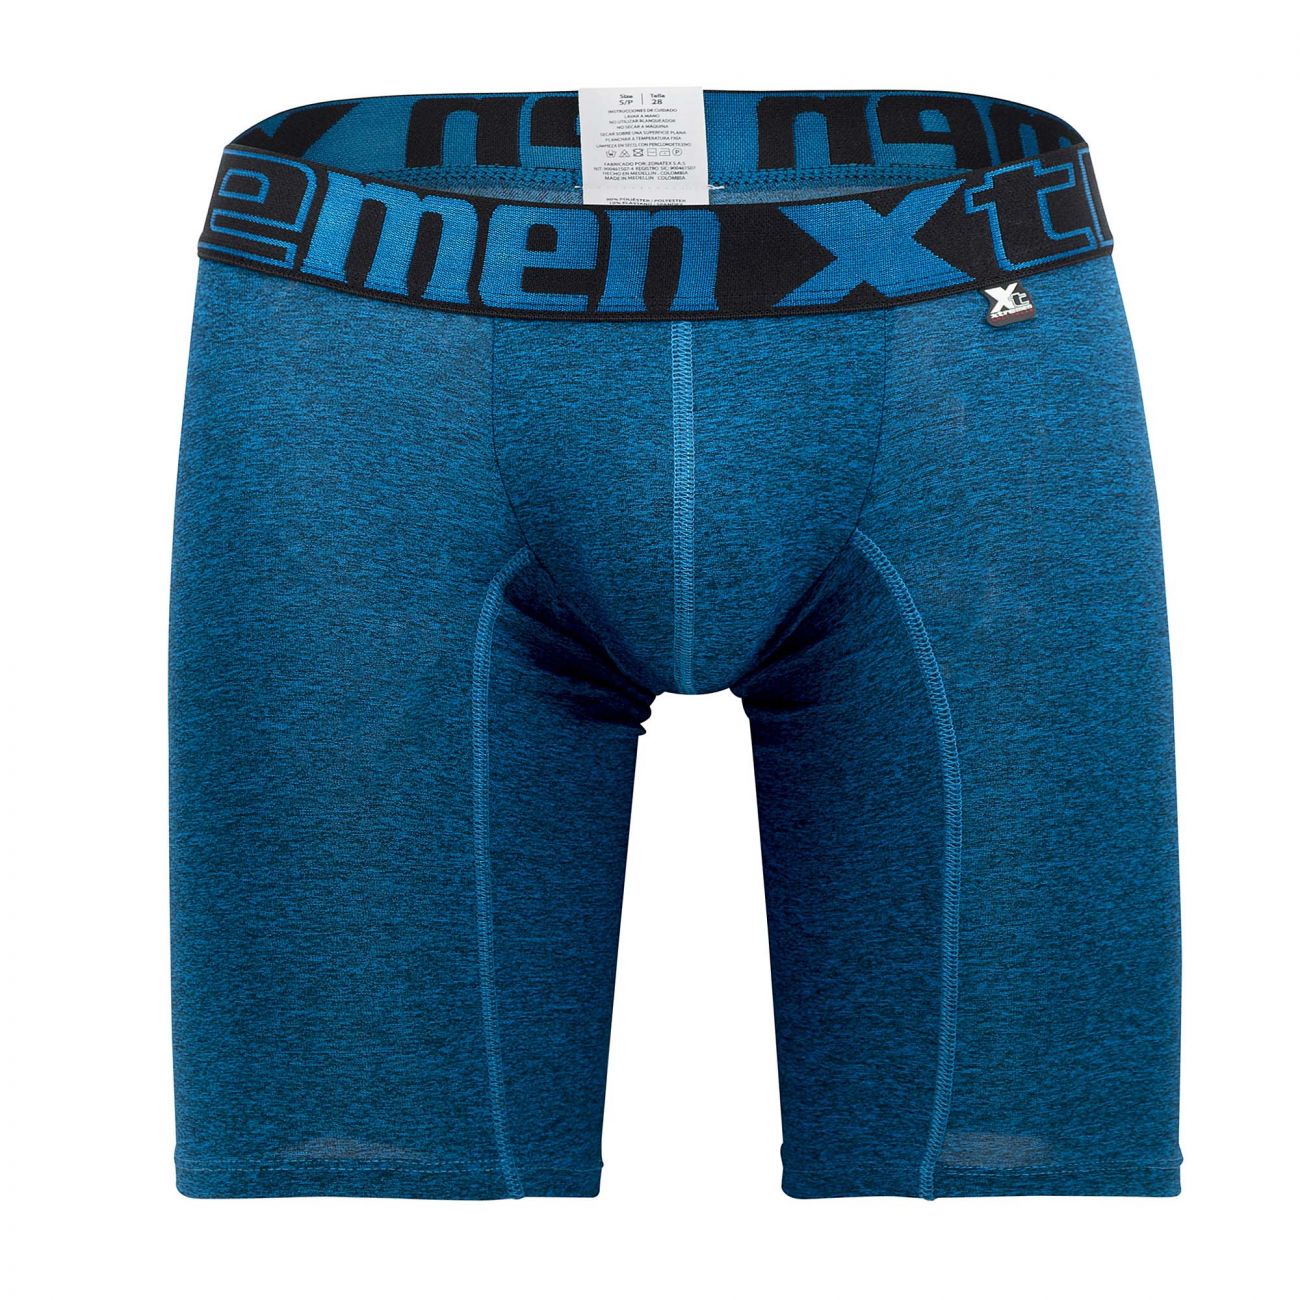 Xtremen 51485 Microfiber Athletic Boxer Briefs Blue